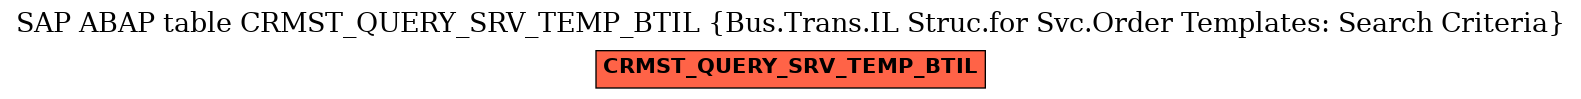 E-R Diagram for table CRMST_QUERY_SRV_TEMP_BTIL (Bus.Trans.IL Struc.for Svc.Order Templates: Search Criteria)